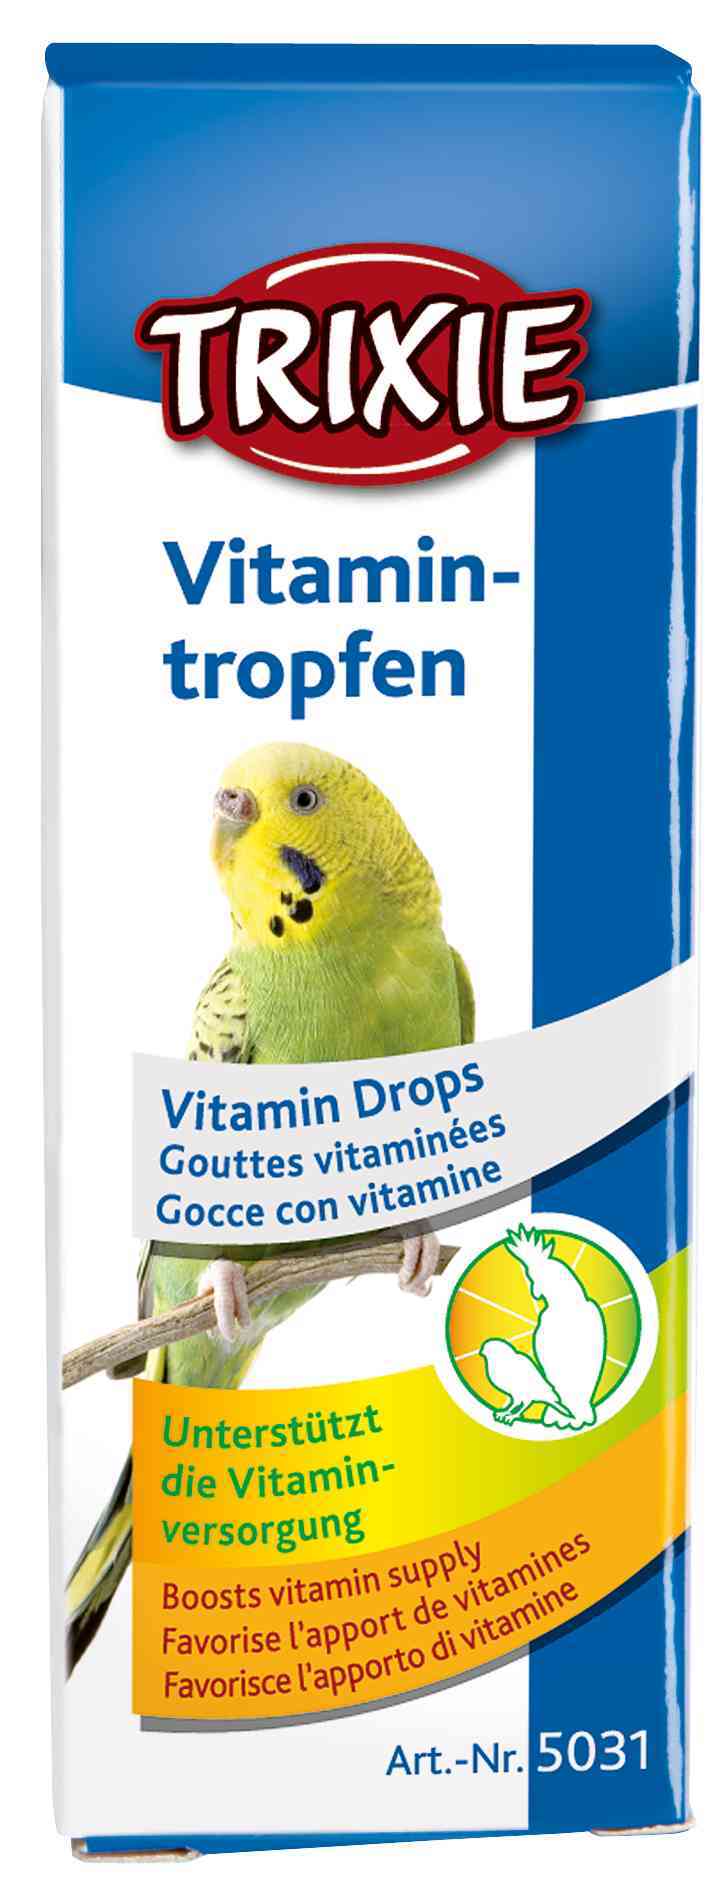 Vitamintropfen